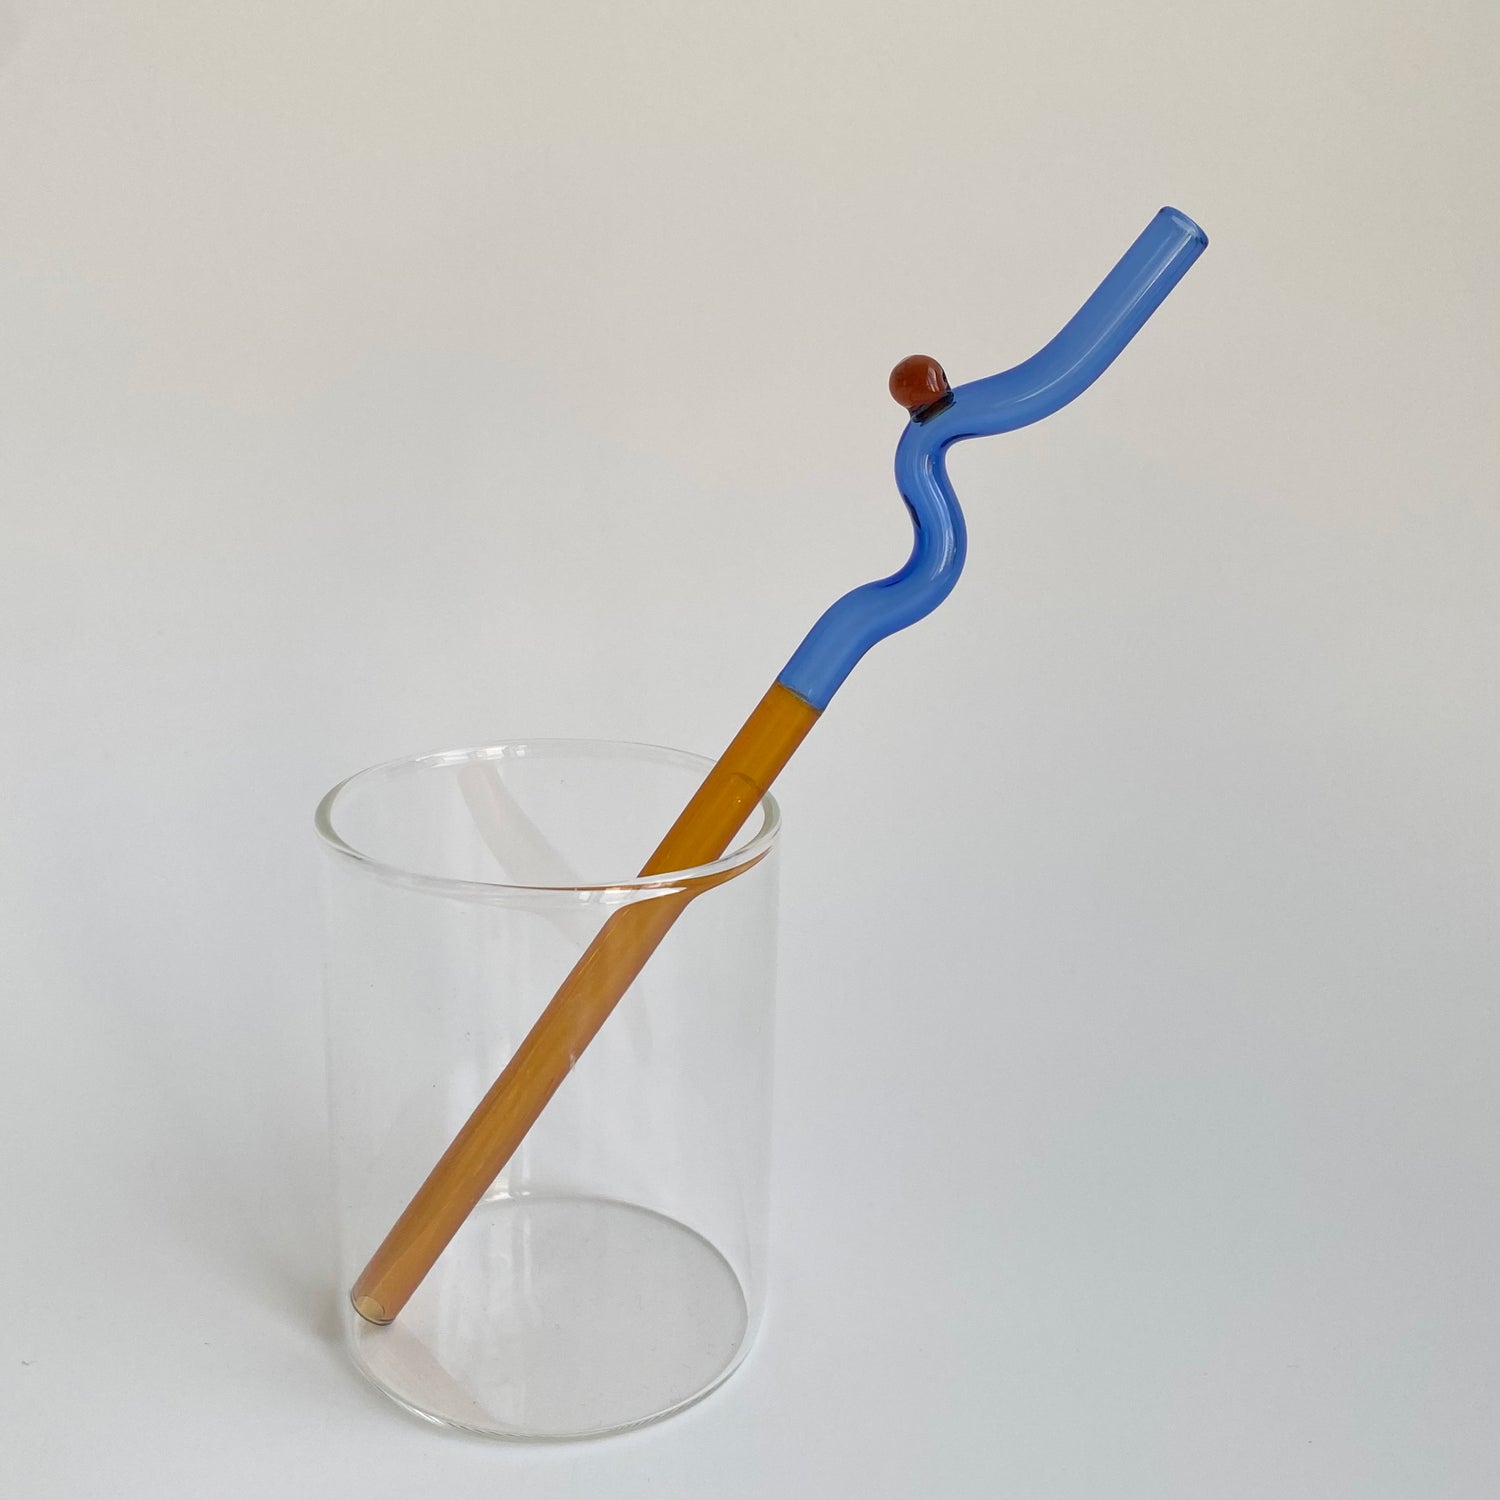 Colorful Spiral & Wavy Glass Straws - 12 twisty glass straw – shopseomthing